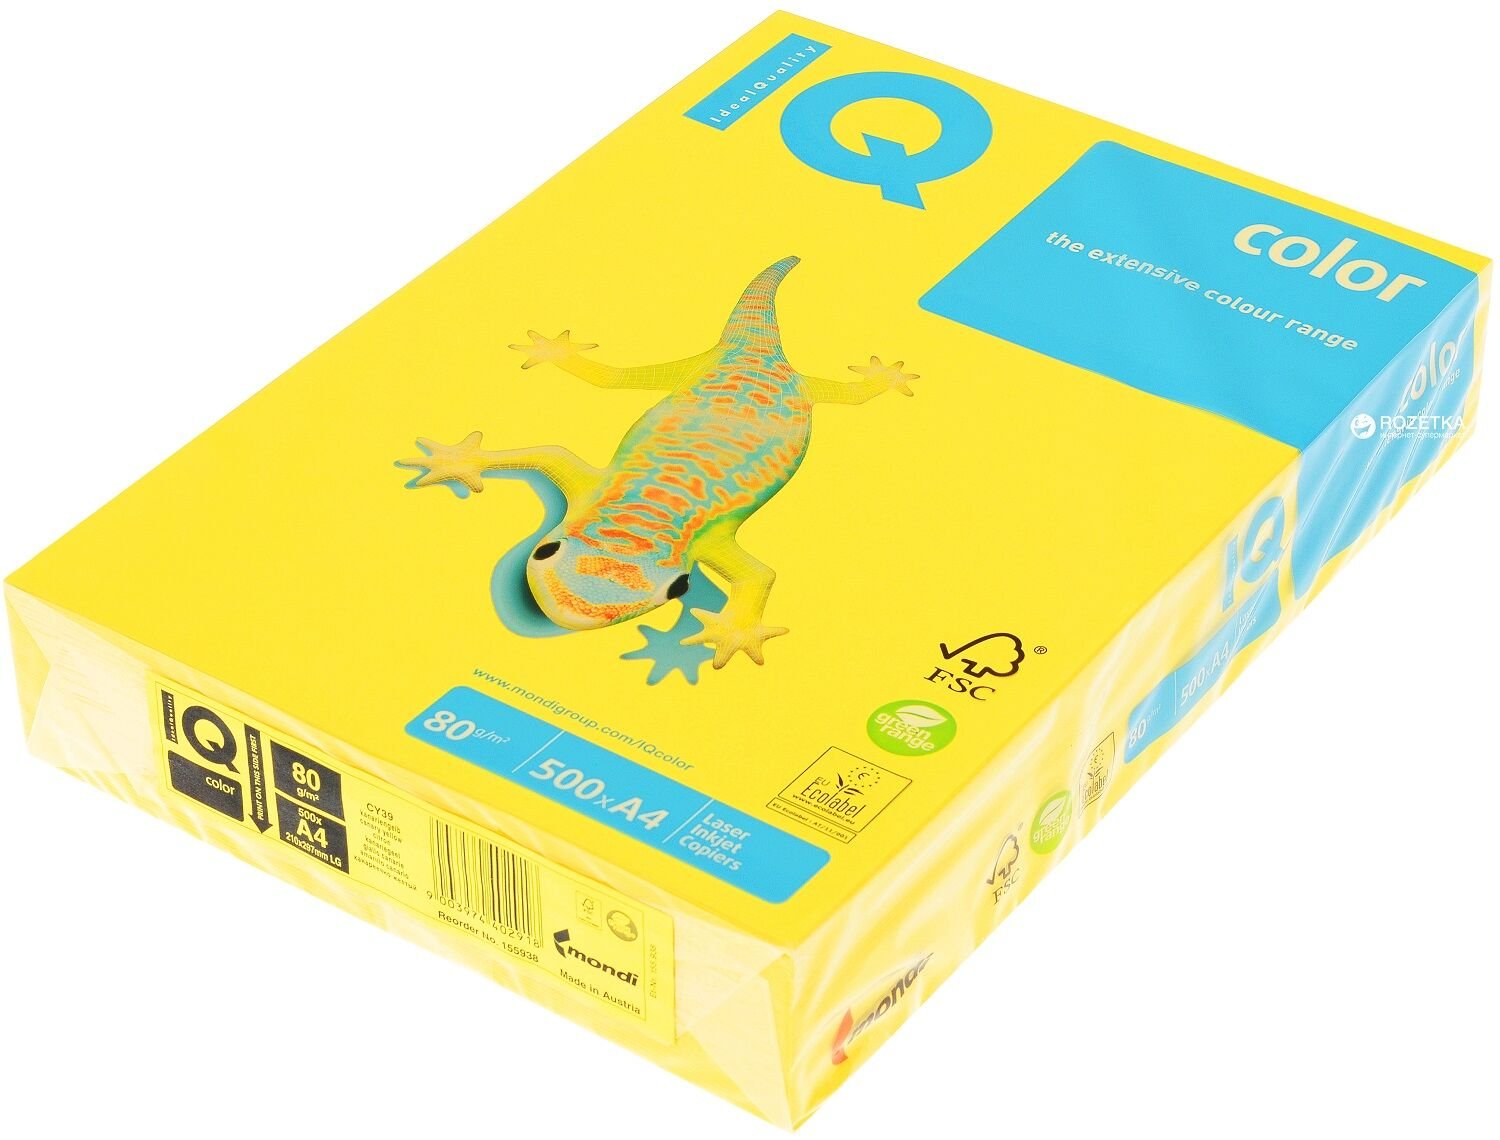 IQ A4 Fotokopi Kağıdı Renkli 80 g/m² 500'lü Paket Koyu Sarı